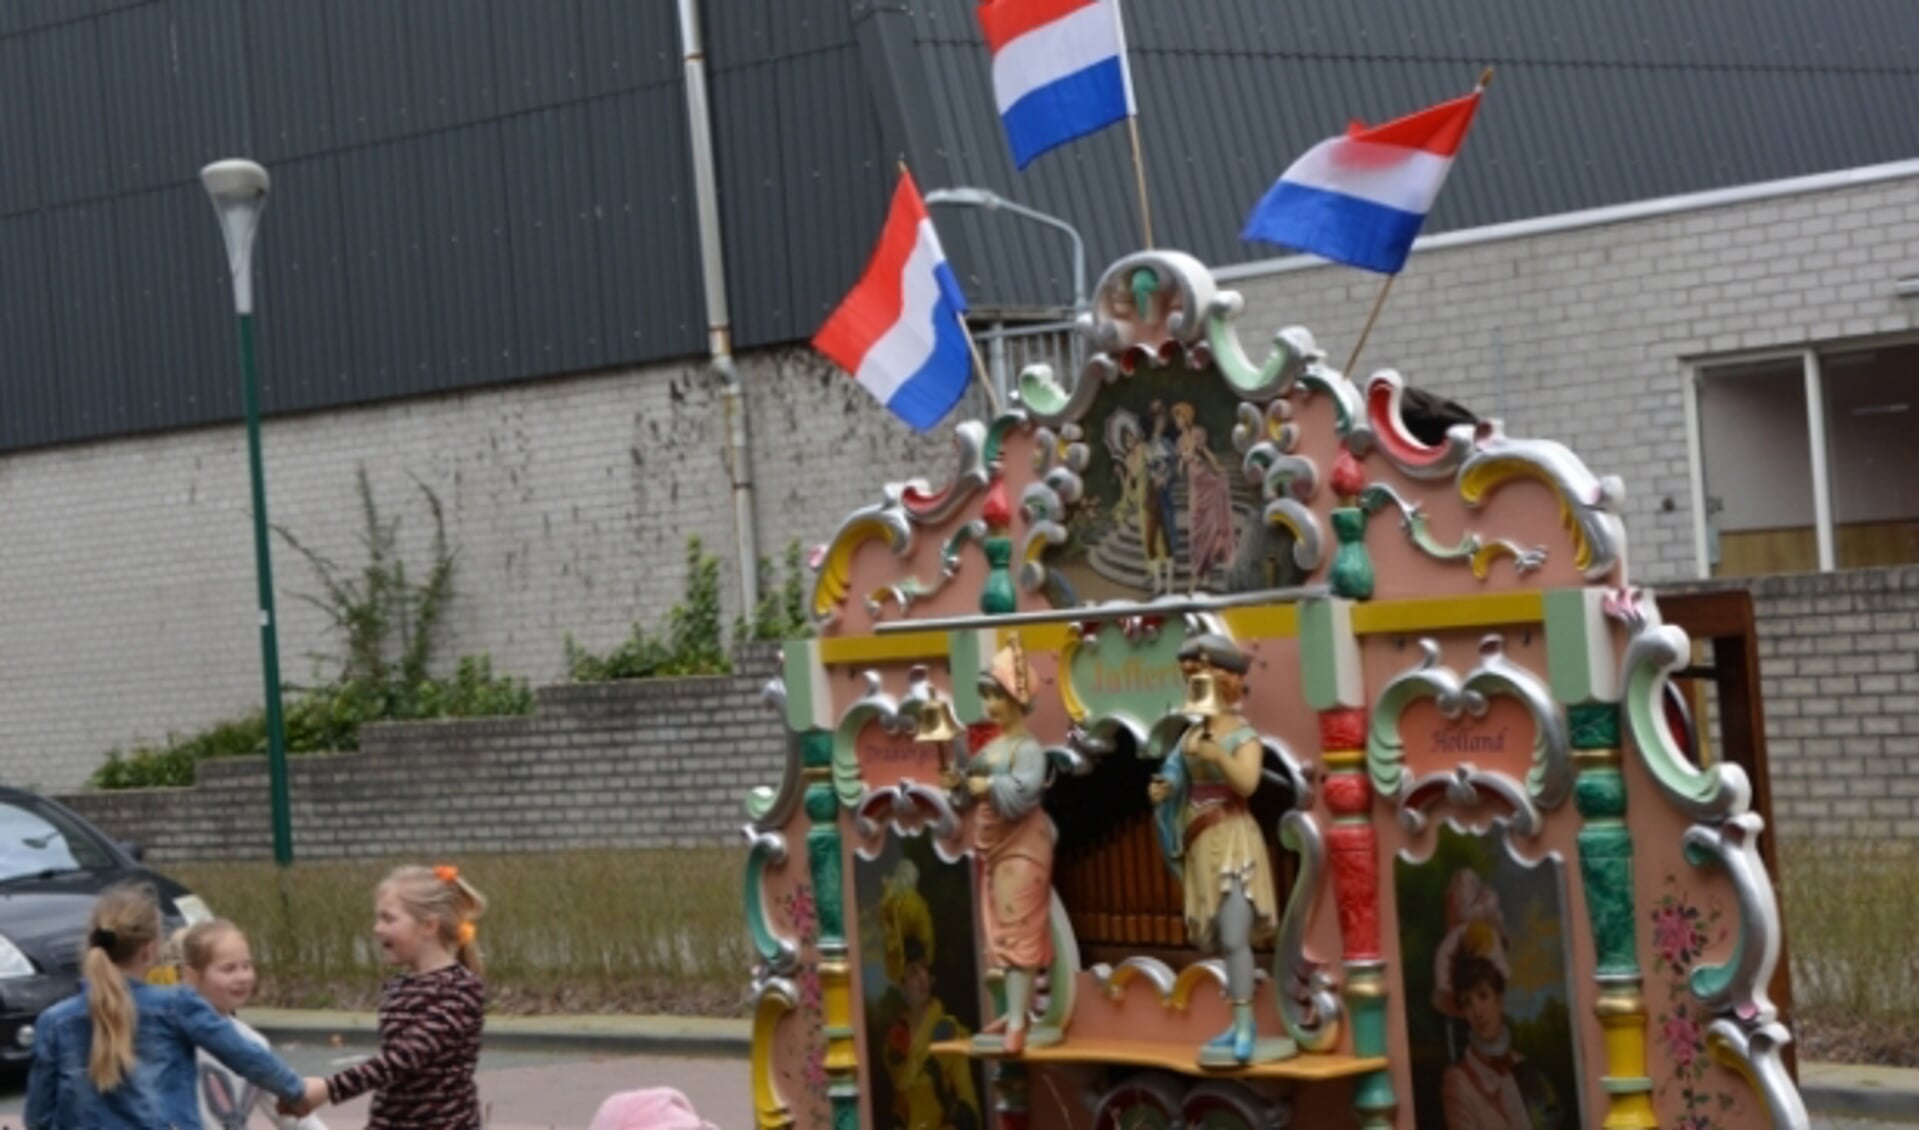 De vlaggetjes op draaiorgel ‘Juffertje' wapperden in de wind op de vrolijke muziek, waarmee woonzorgcentrum De Lindewaard de mineurstemming verdreef. Foto: Janneke Severs-Hilgeman. 